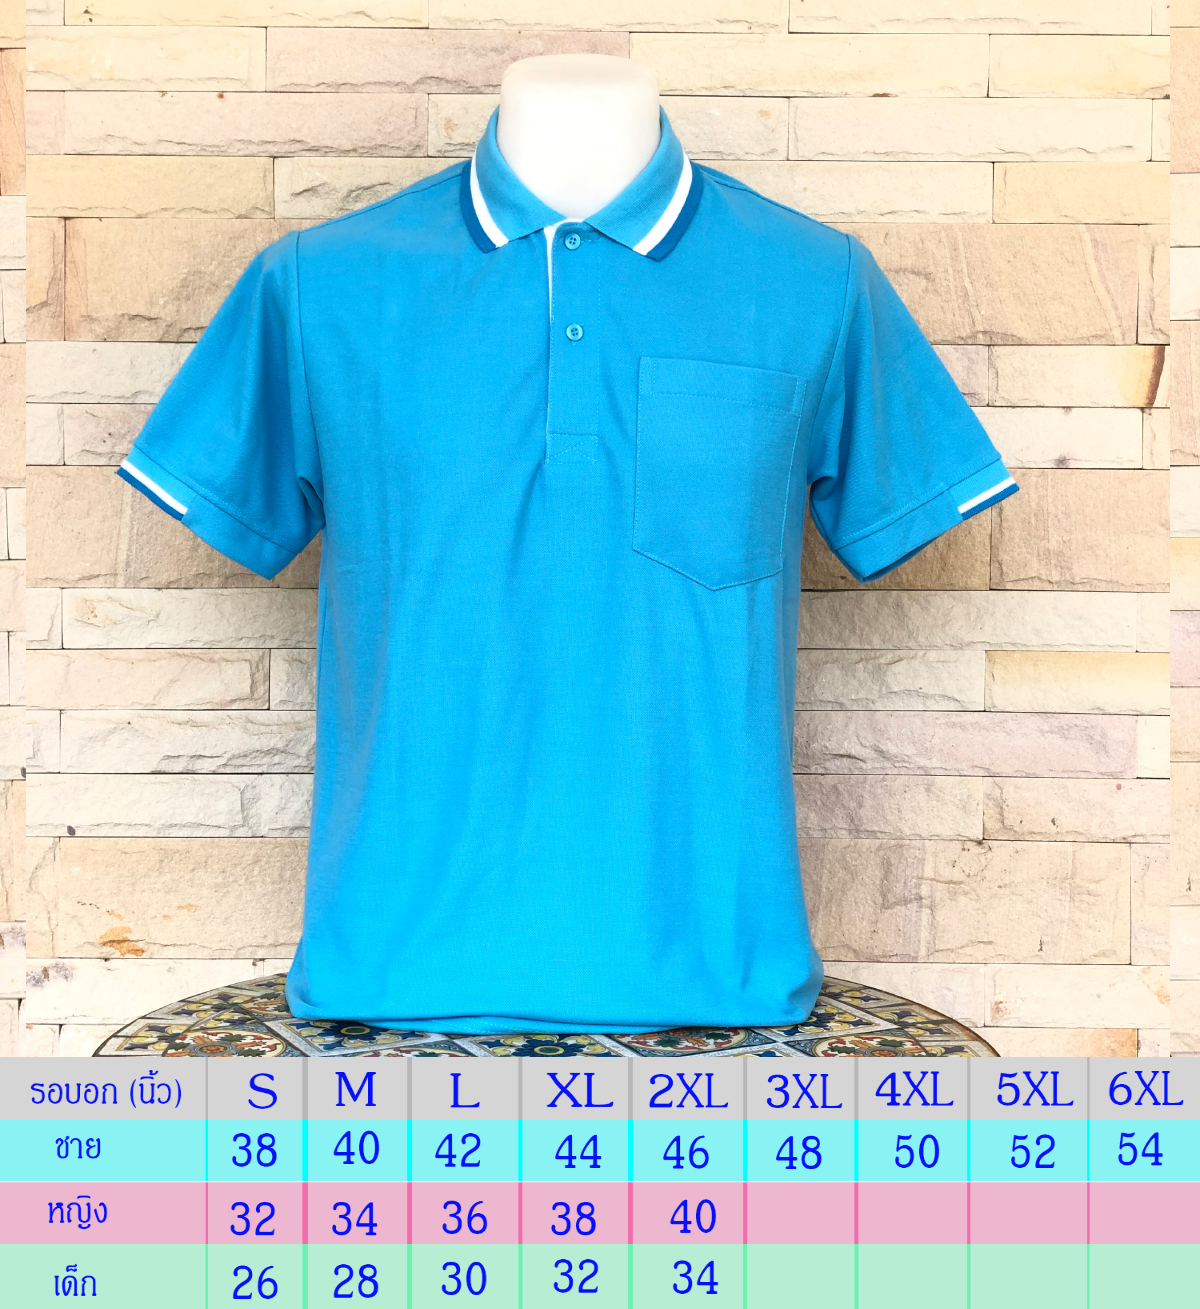 เสื้อโปโล Polo Shirt Plain Polo T Shirt Soft Pique Short Sleeve Tops For Men Side Vents สีฟ้า ปกขลิปขาว เนื้อผ้านุ่ม สวมใส่สบาย ซึ่งมีทั้งแบบชาย และแบบผู้หญิง